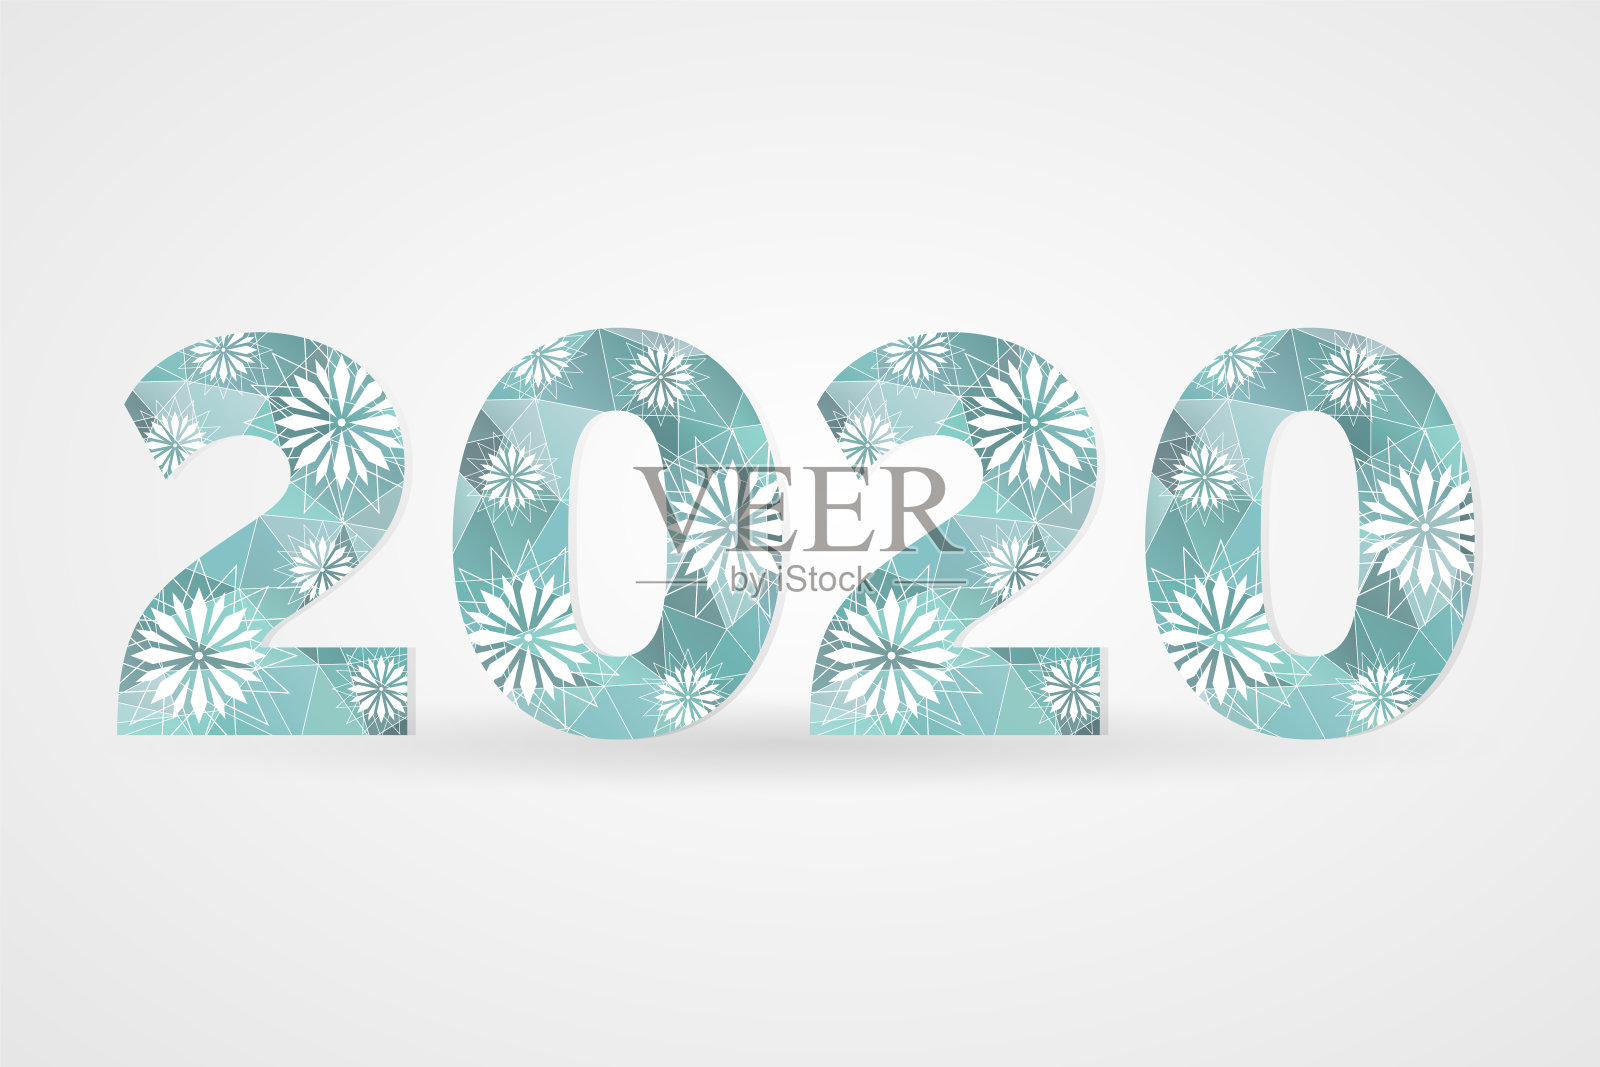 2020新年快乐矢量插图。寒假雪象征着庆祝。用雪花装饰的多边形标志。蓝白几何装饰插画图片素材